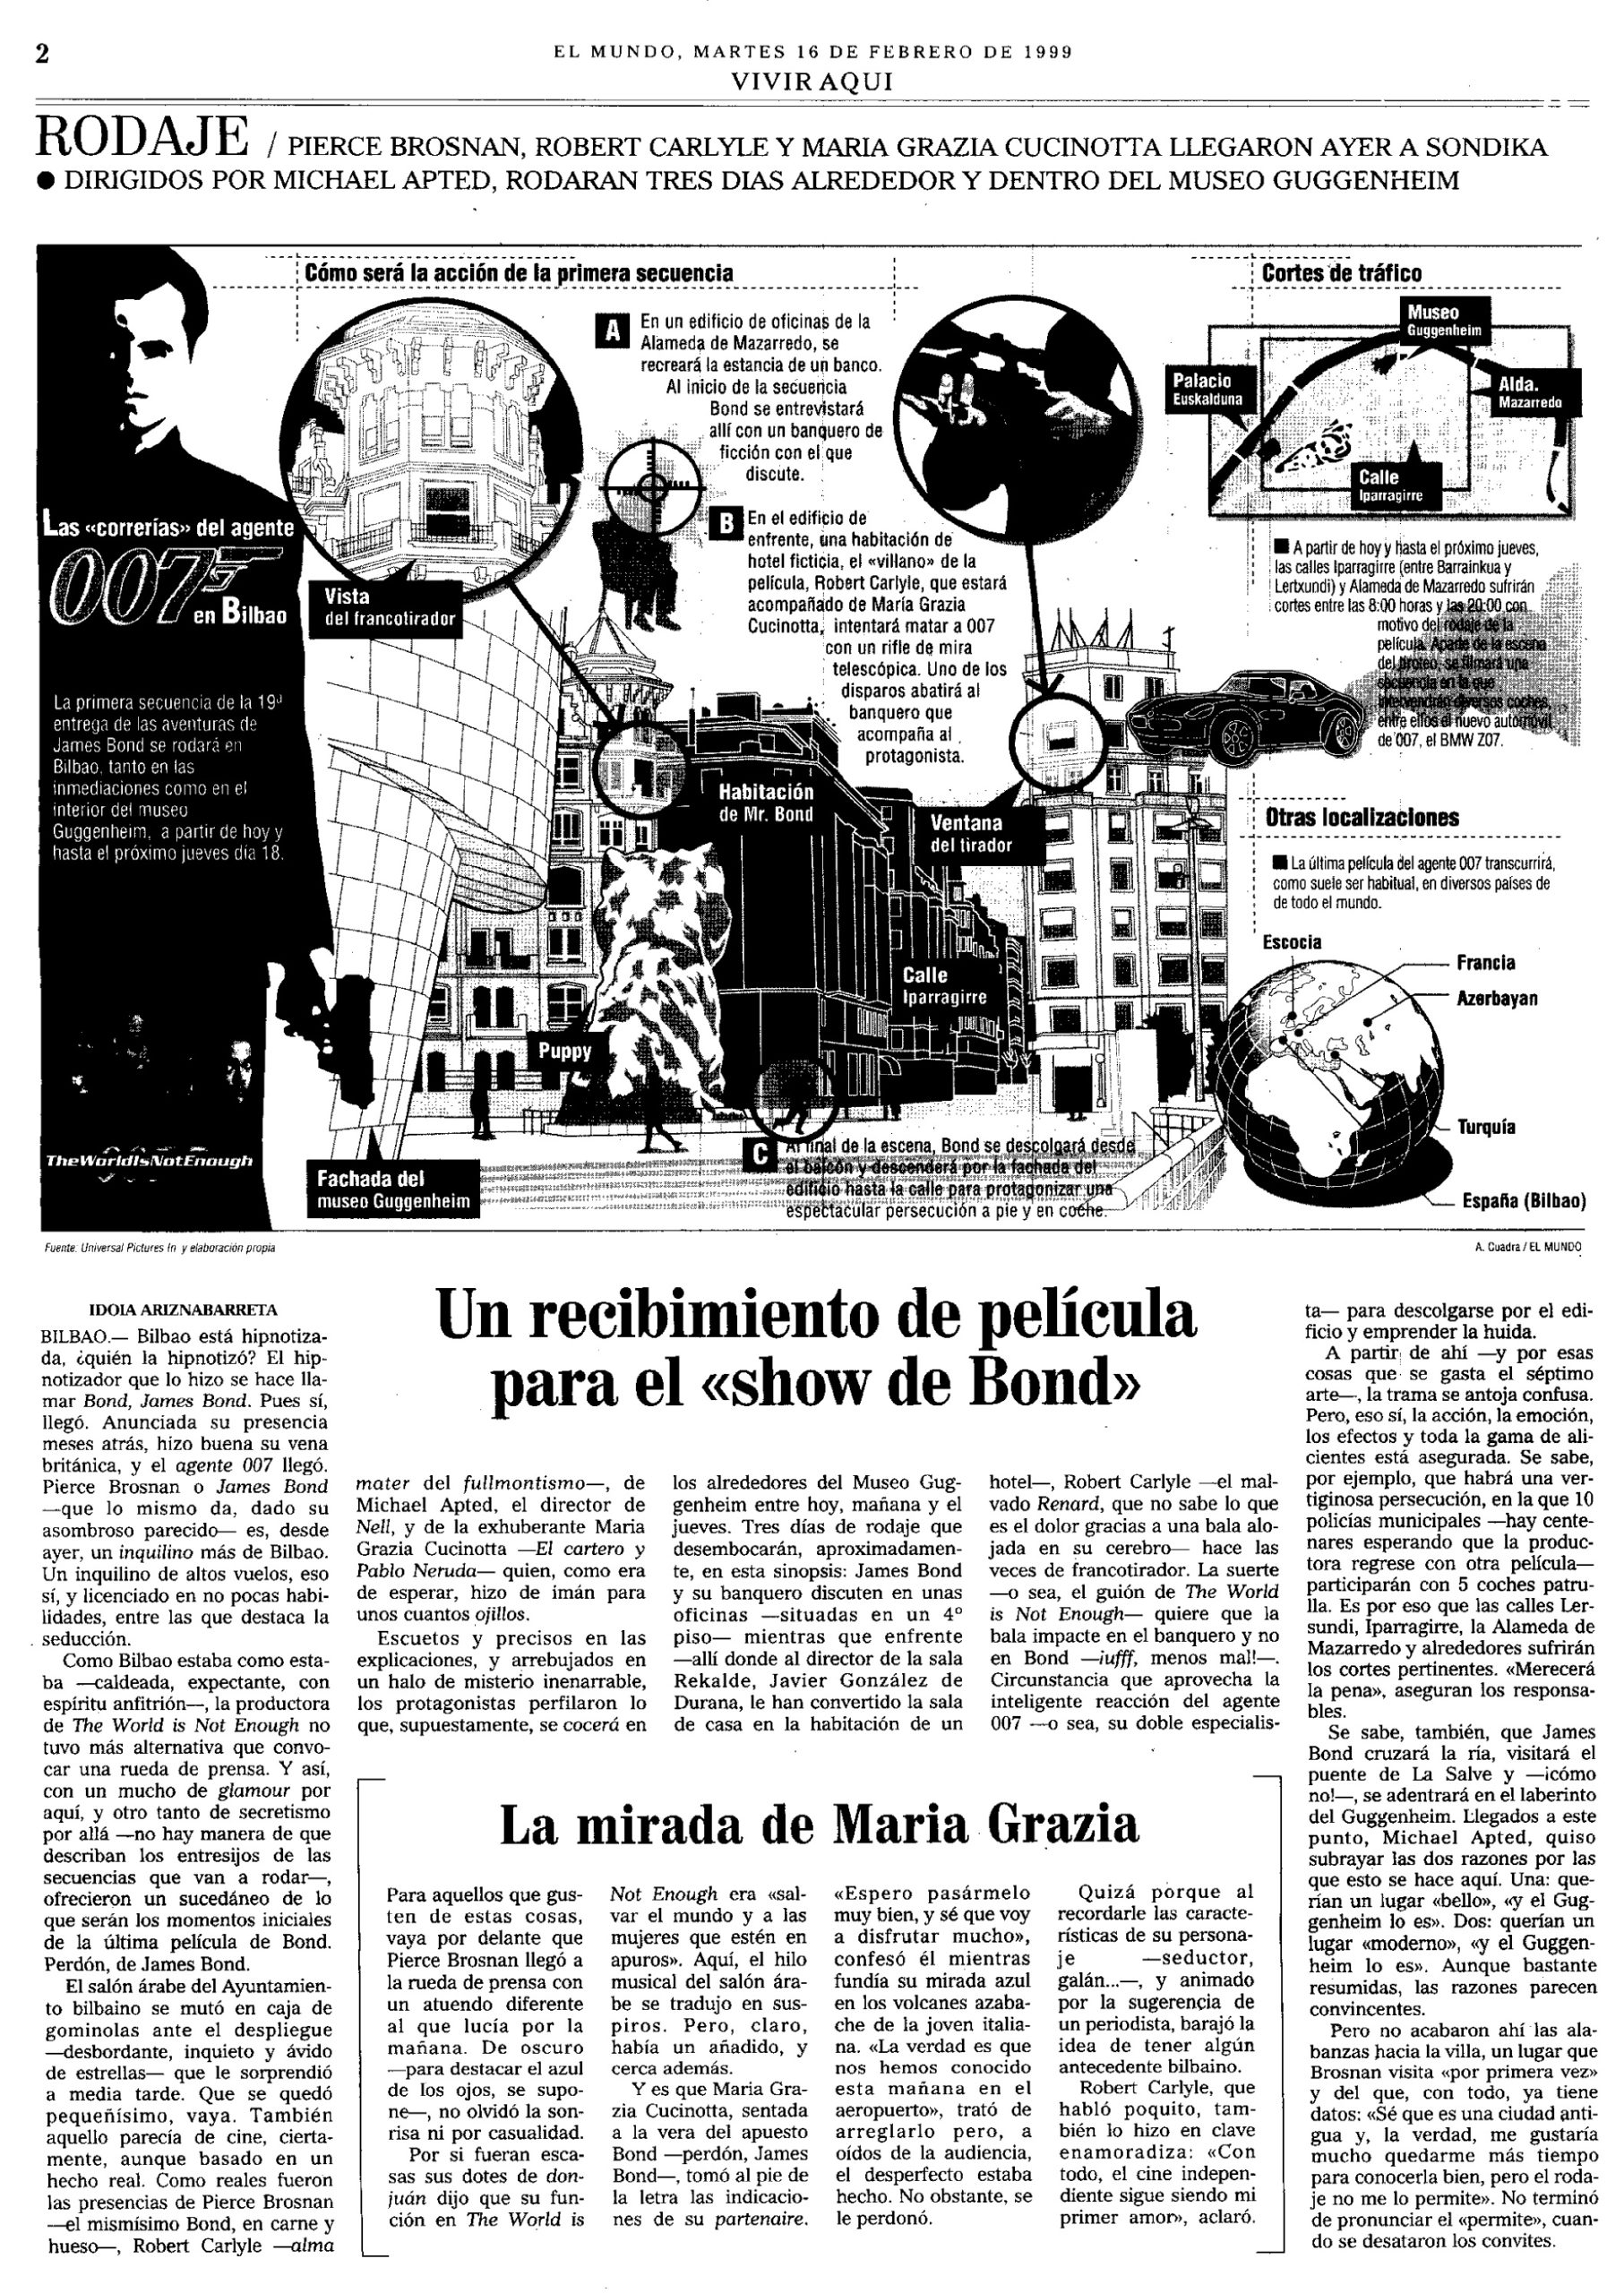 19 1999 02 16 El Mundo Pais Vasco Vivir Aqui 02 Rodaje Bilbao scaled